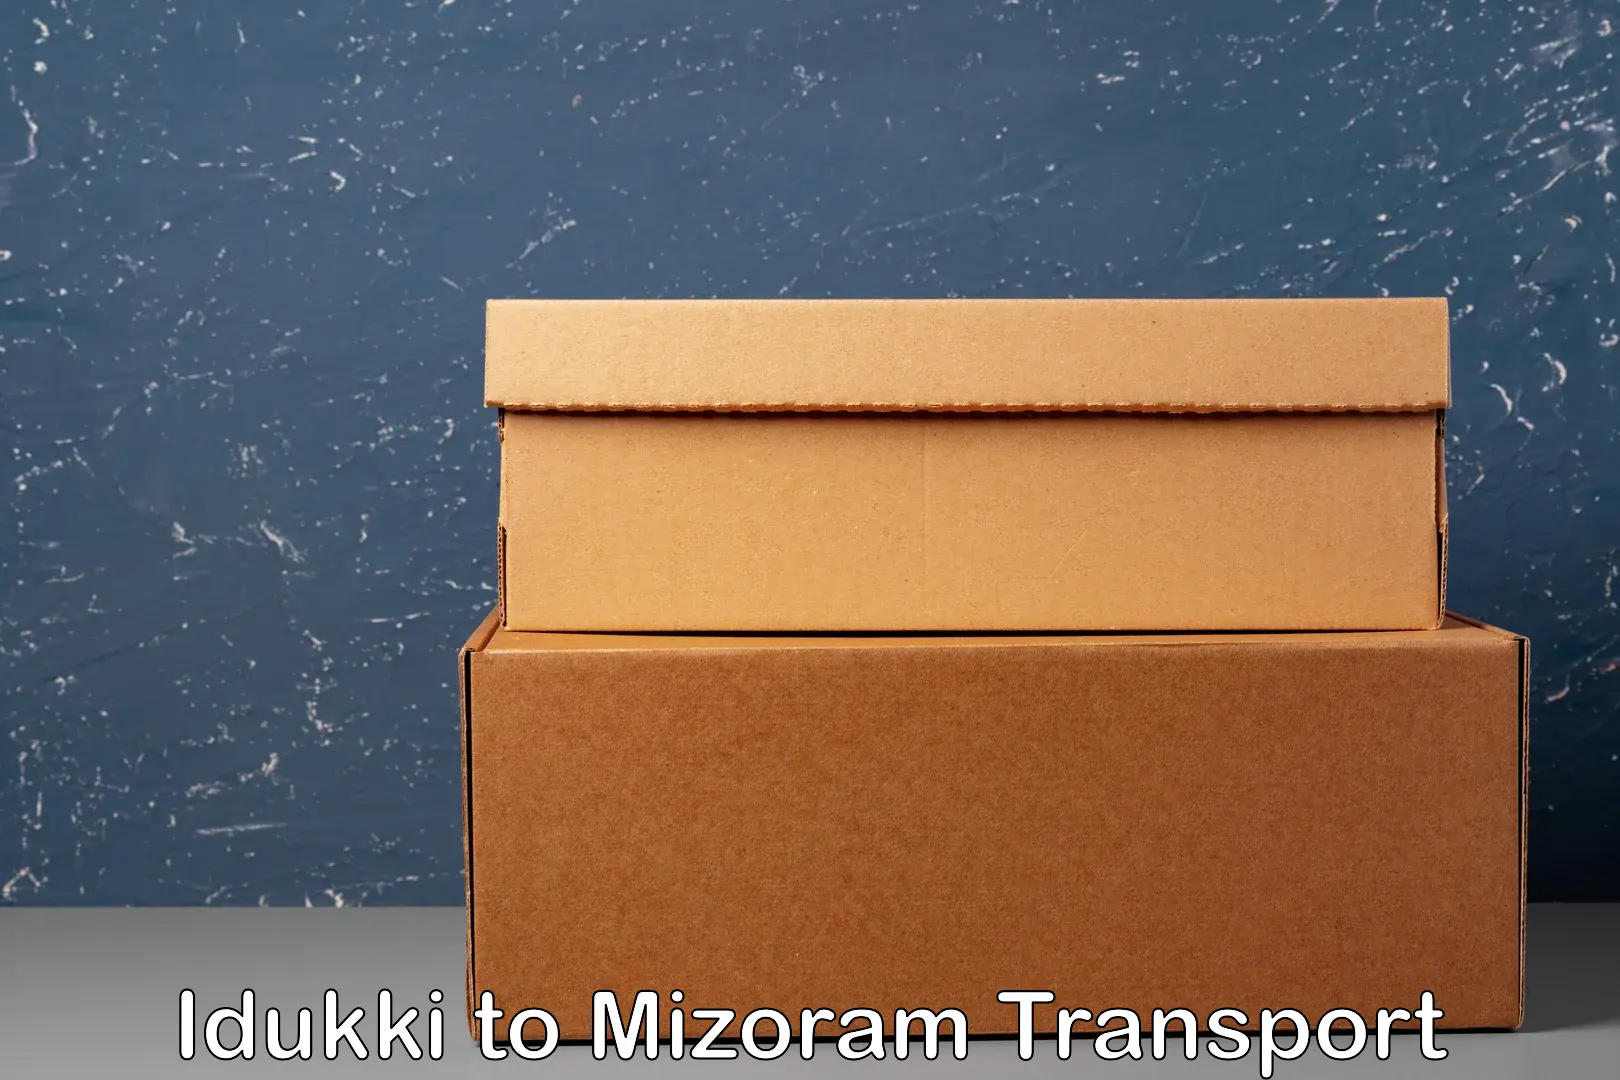 Shipping partner Idukki to Thenzawl